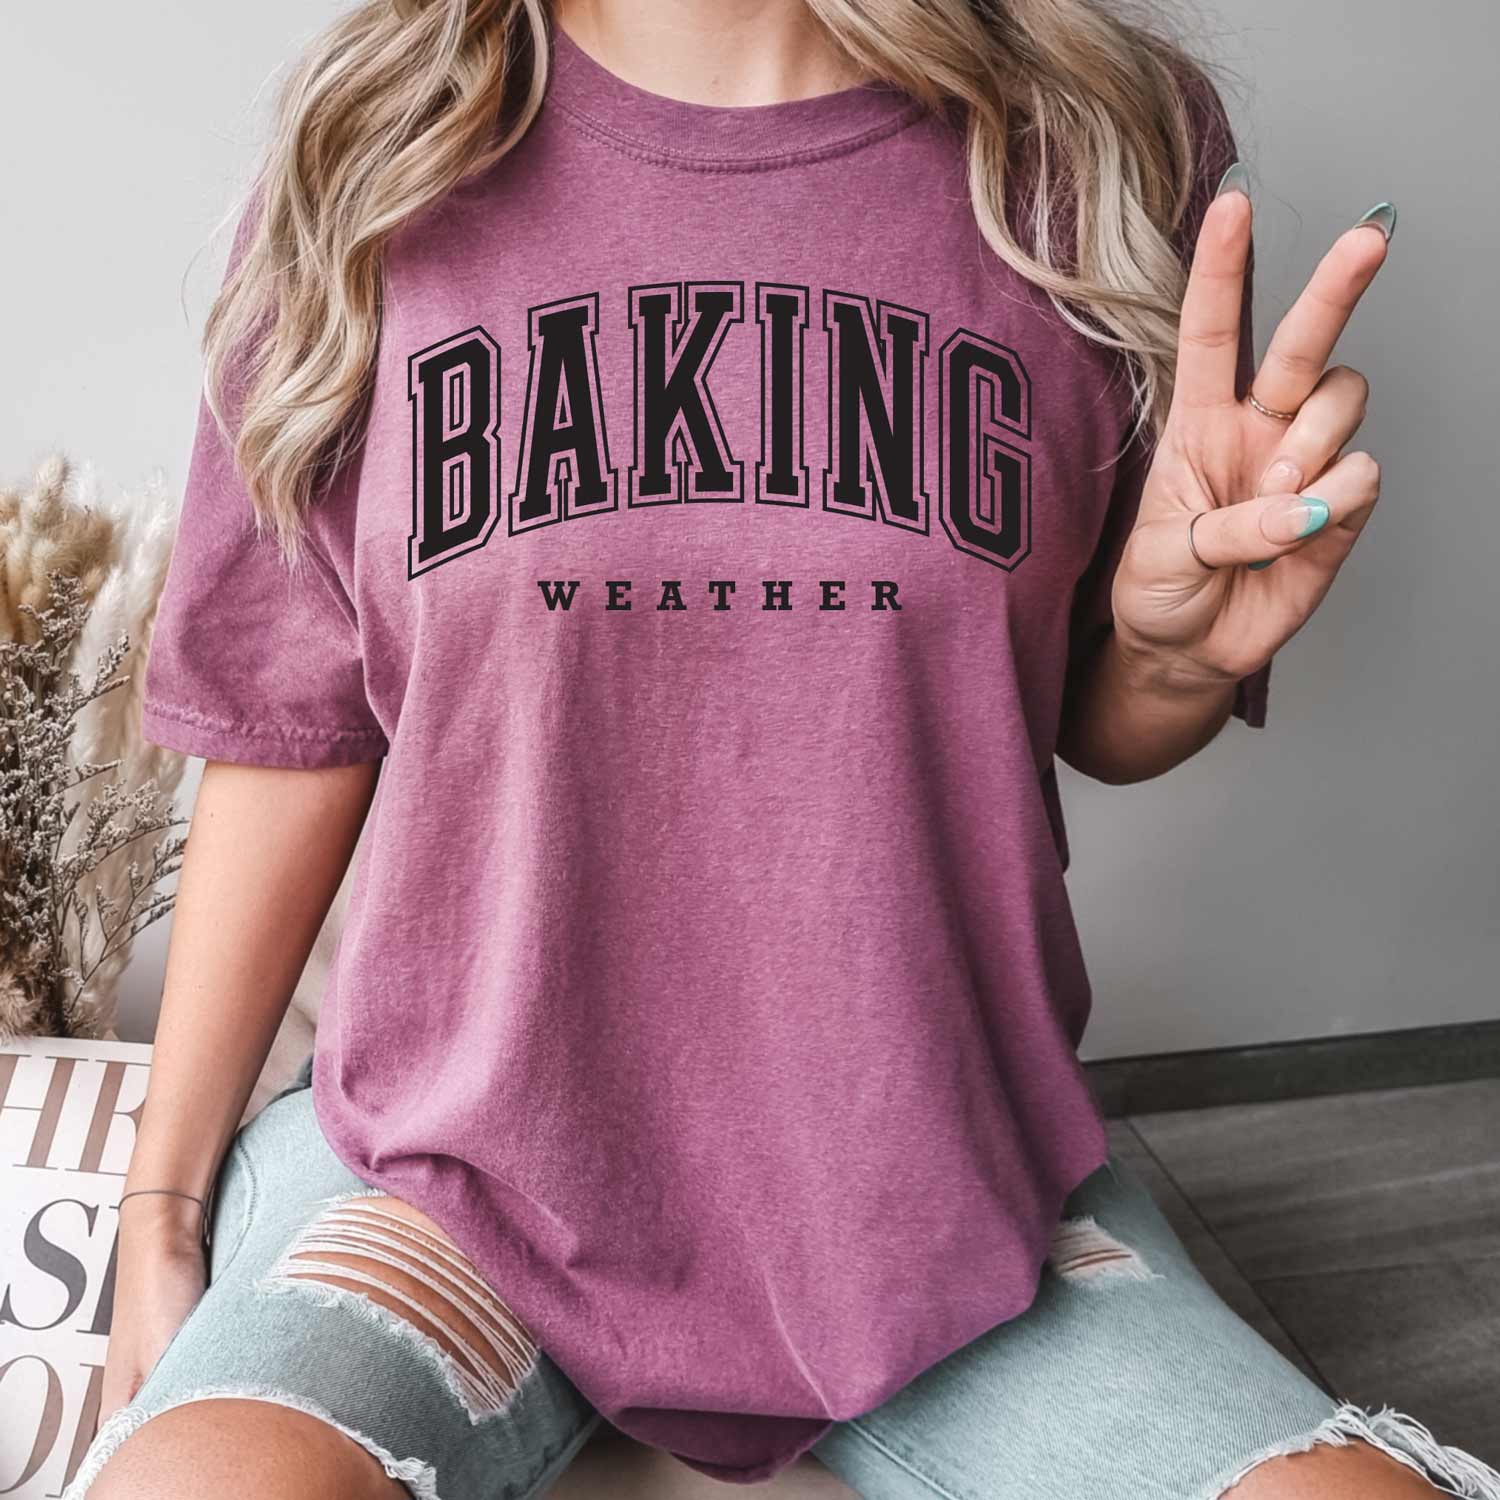 Baking Weather Black Ink Unisex T-Shirt